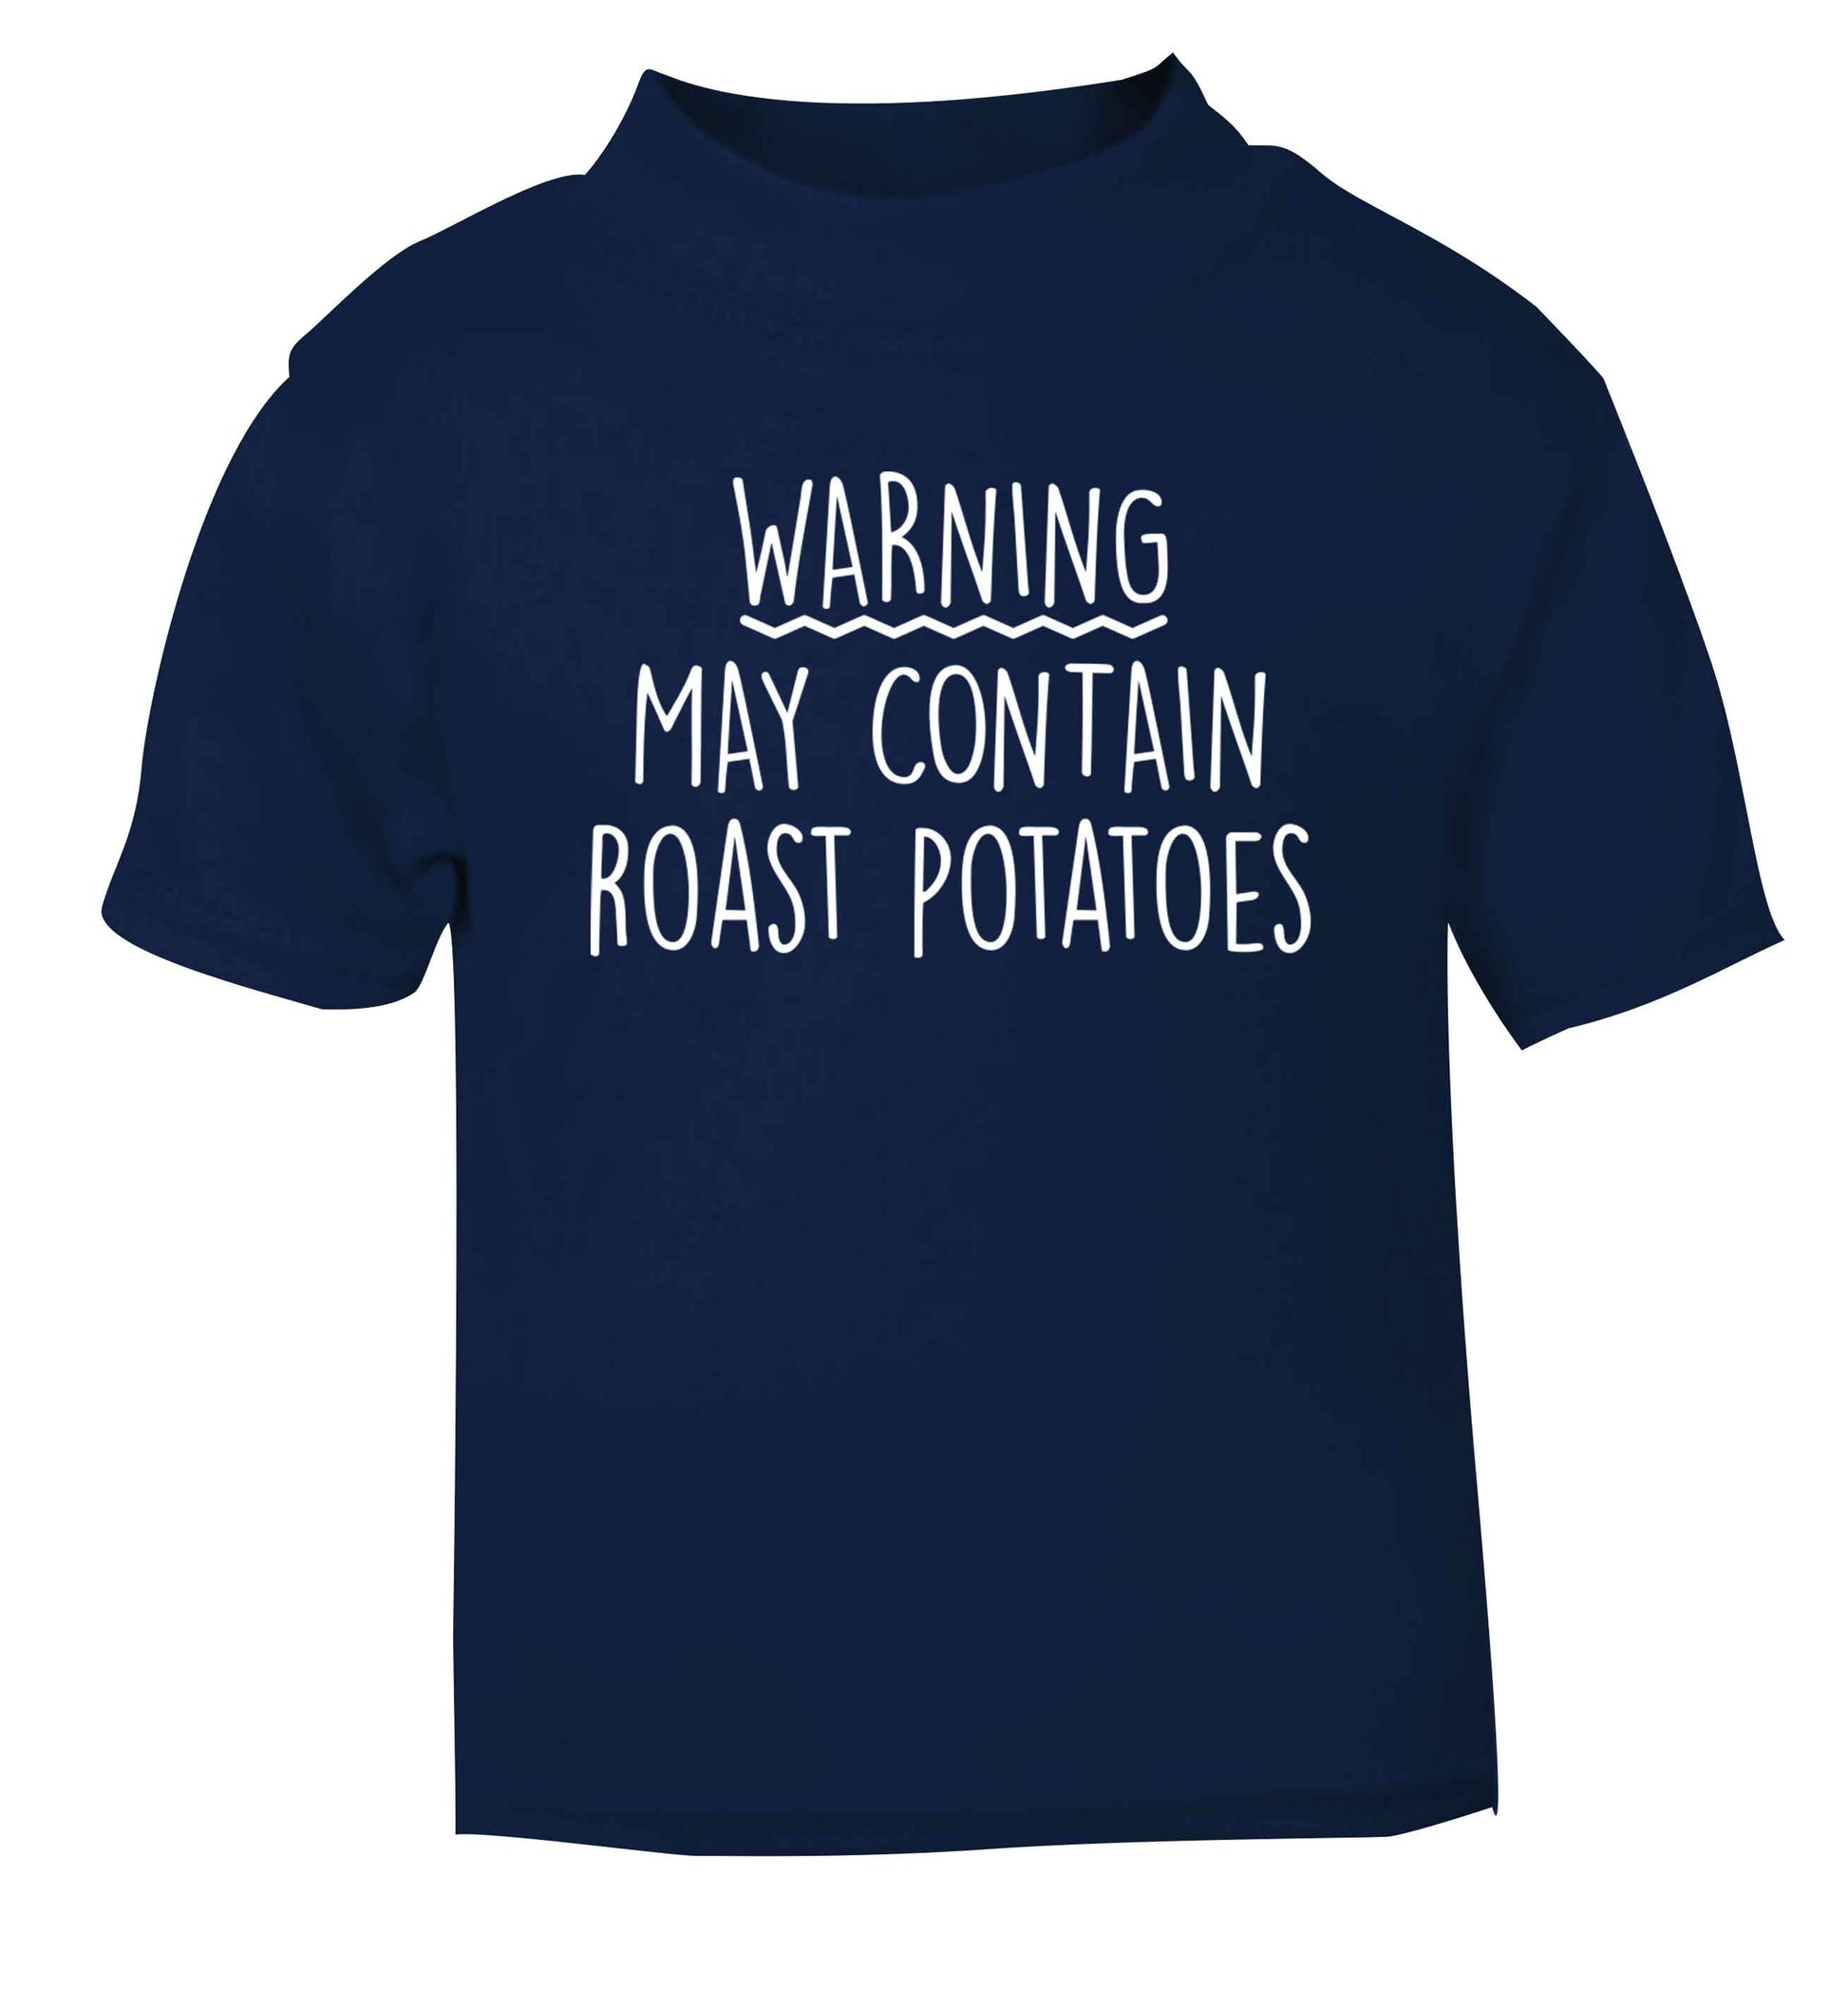 Warning may containg roast potatoes navy baby toddler Tshirt 2 Years